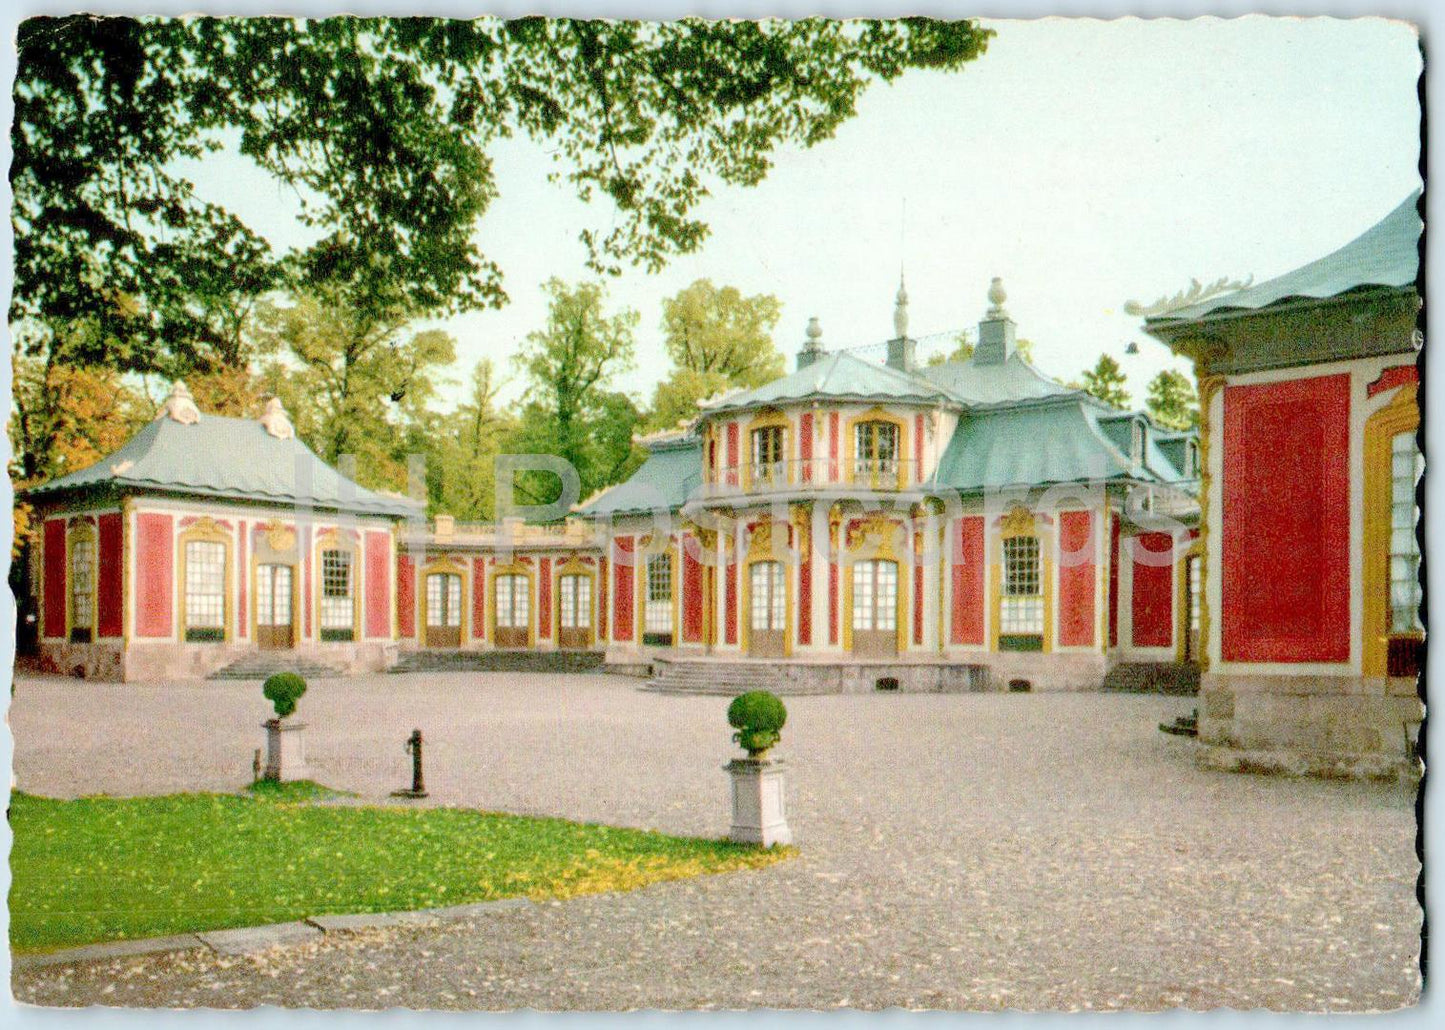 Drottningholm - Kina Slott - Chinese Pavilion - castle - old postcard - 1958 - Sweden - used